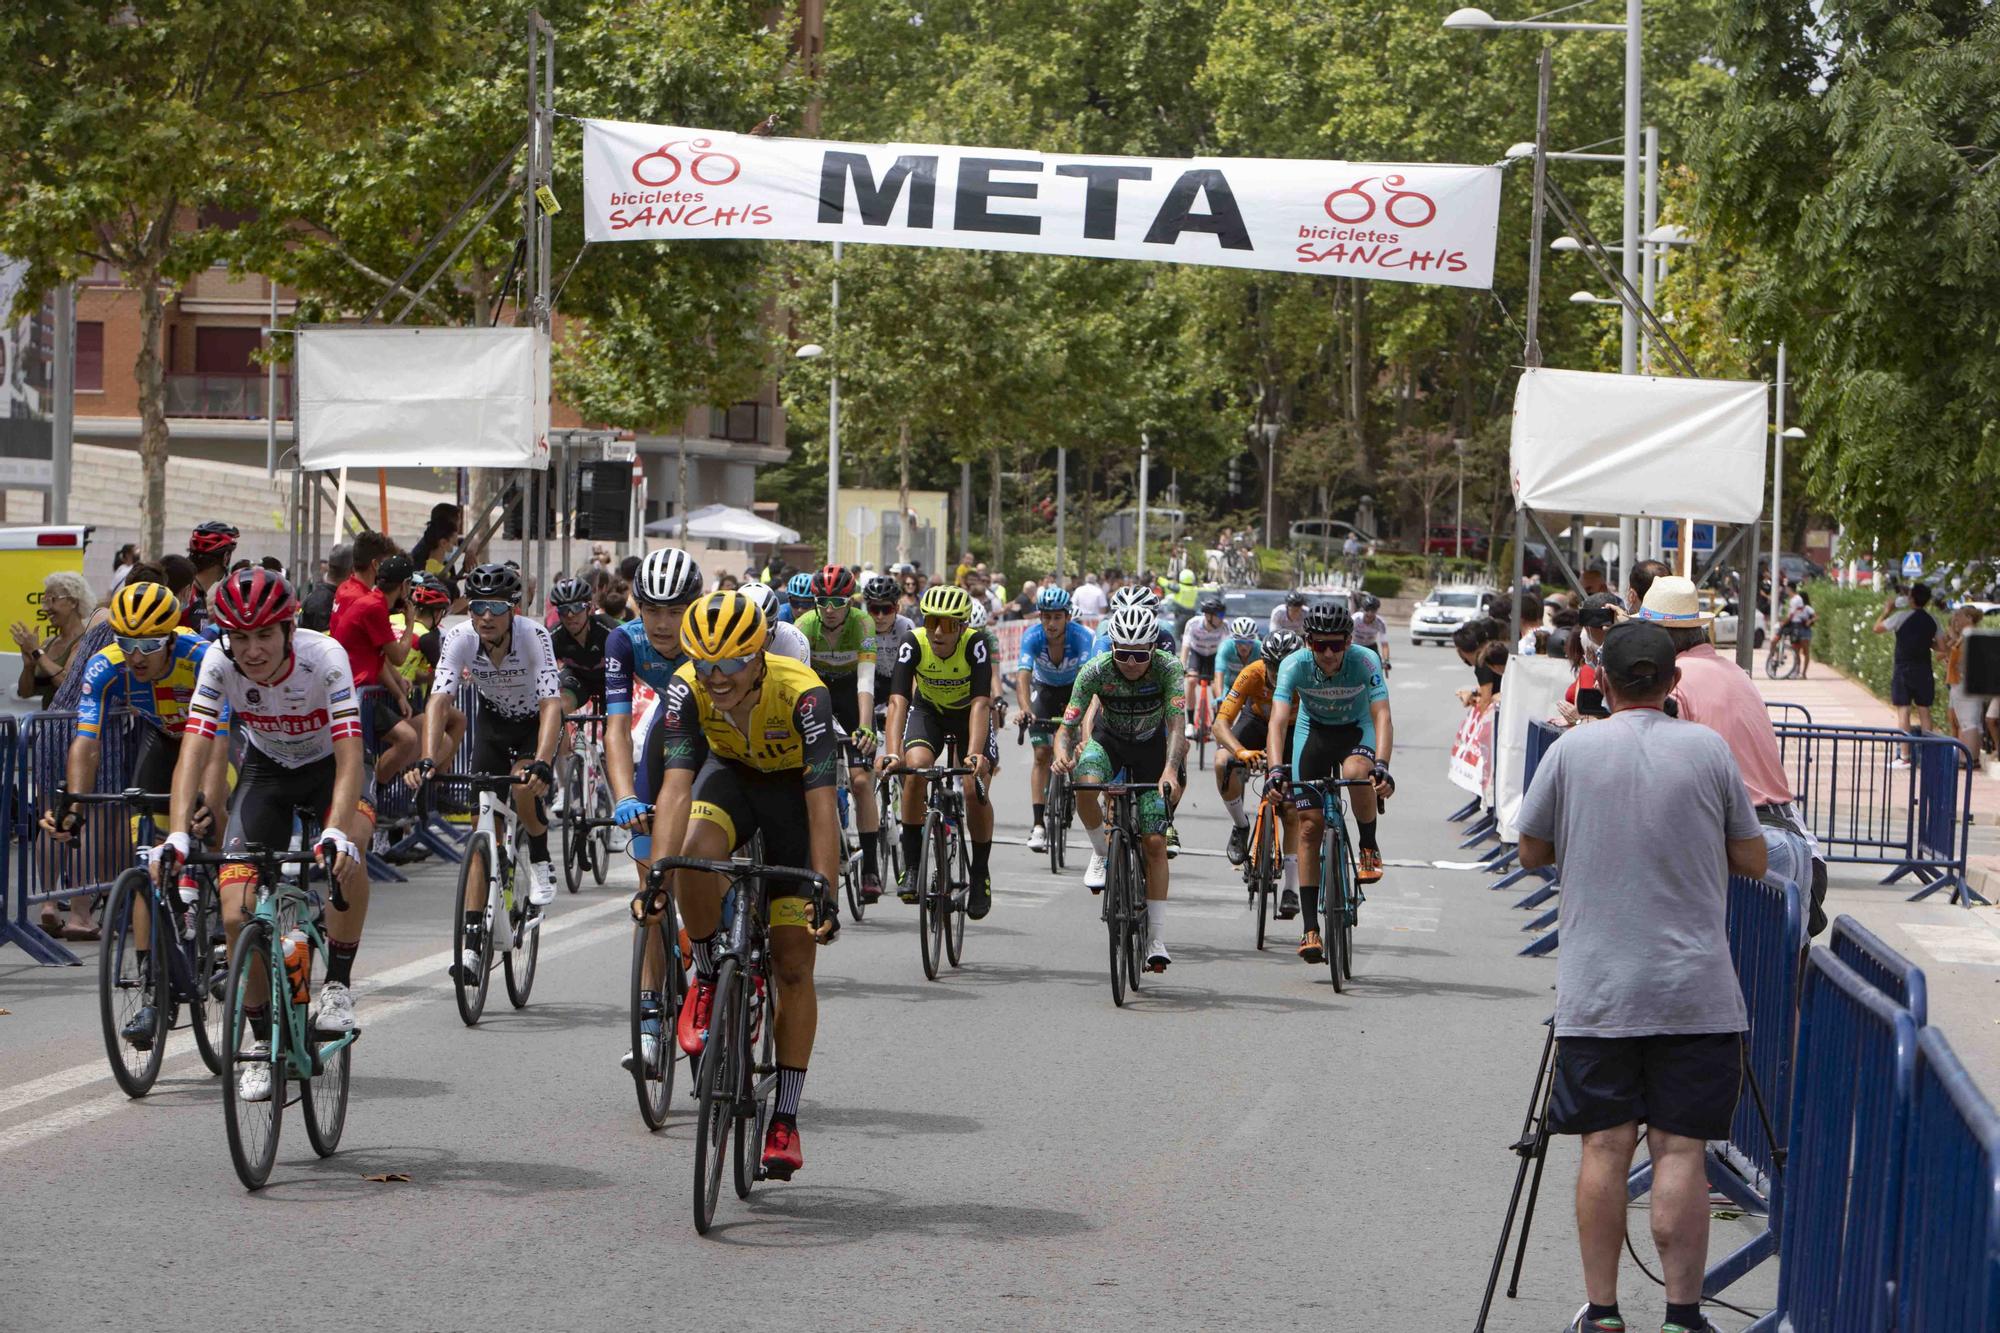 XXXII Trofeu de Ciclisme Fira d’Agost de Xàtiva 2021.